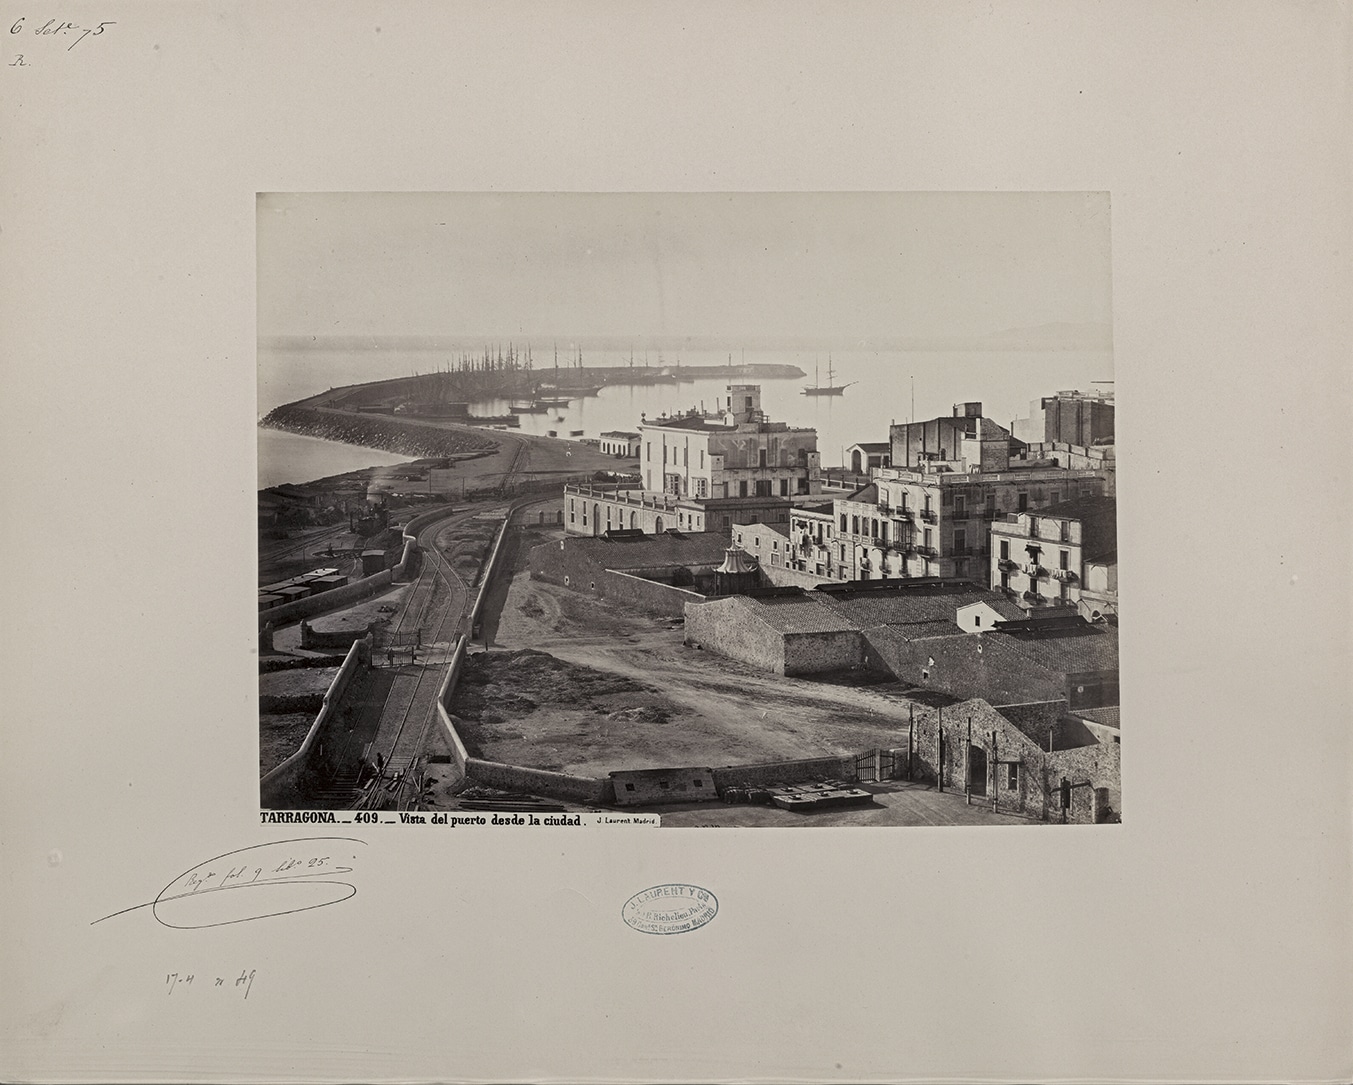 Tarragona. Vista del port des de la ciutat, 1871-1872. Biblioteca Nacional de España, Madrid